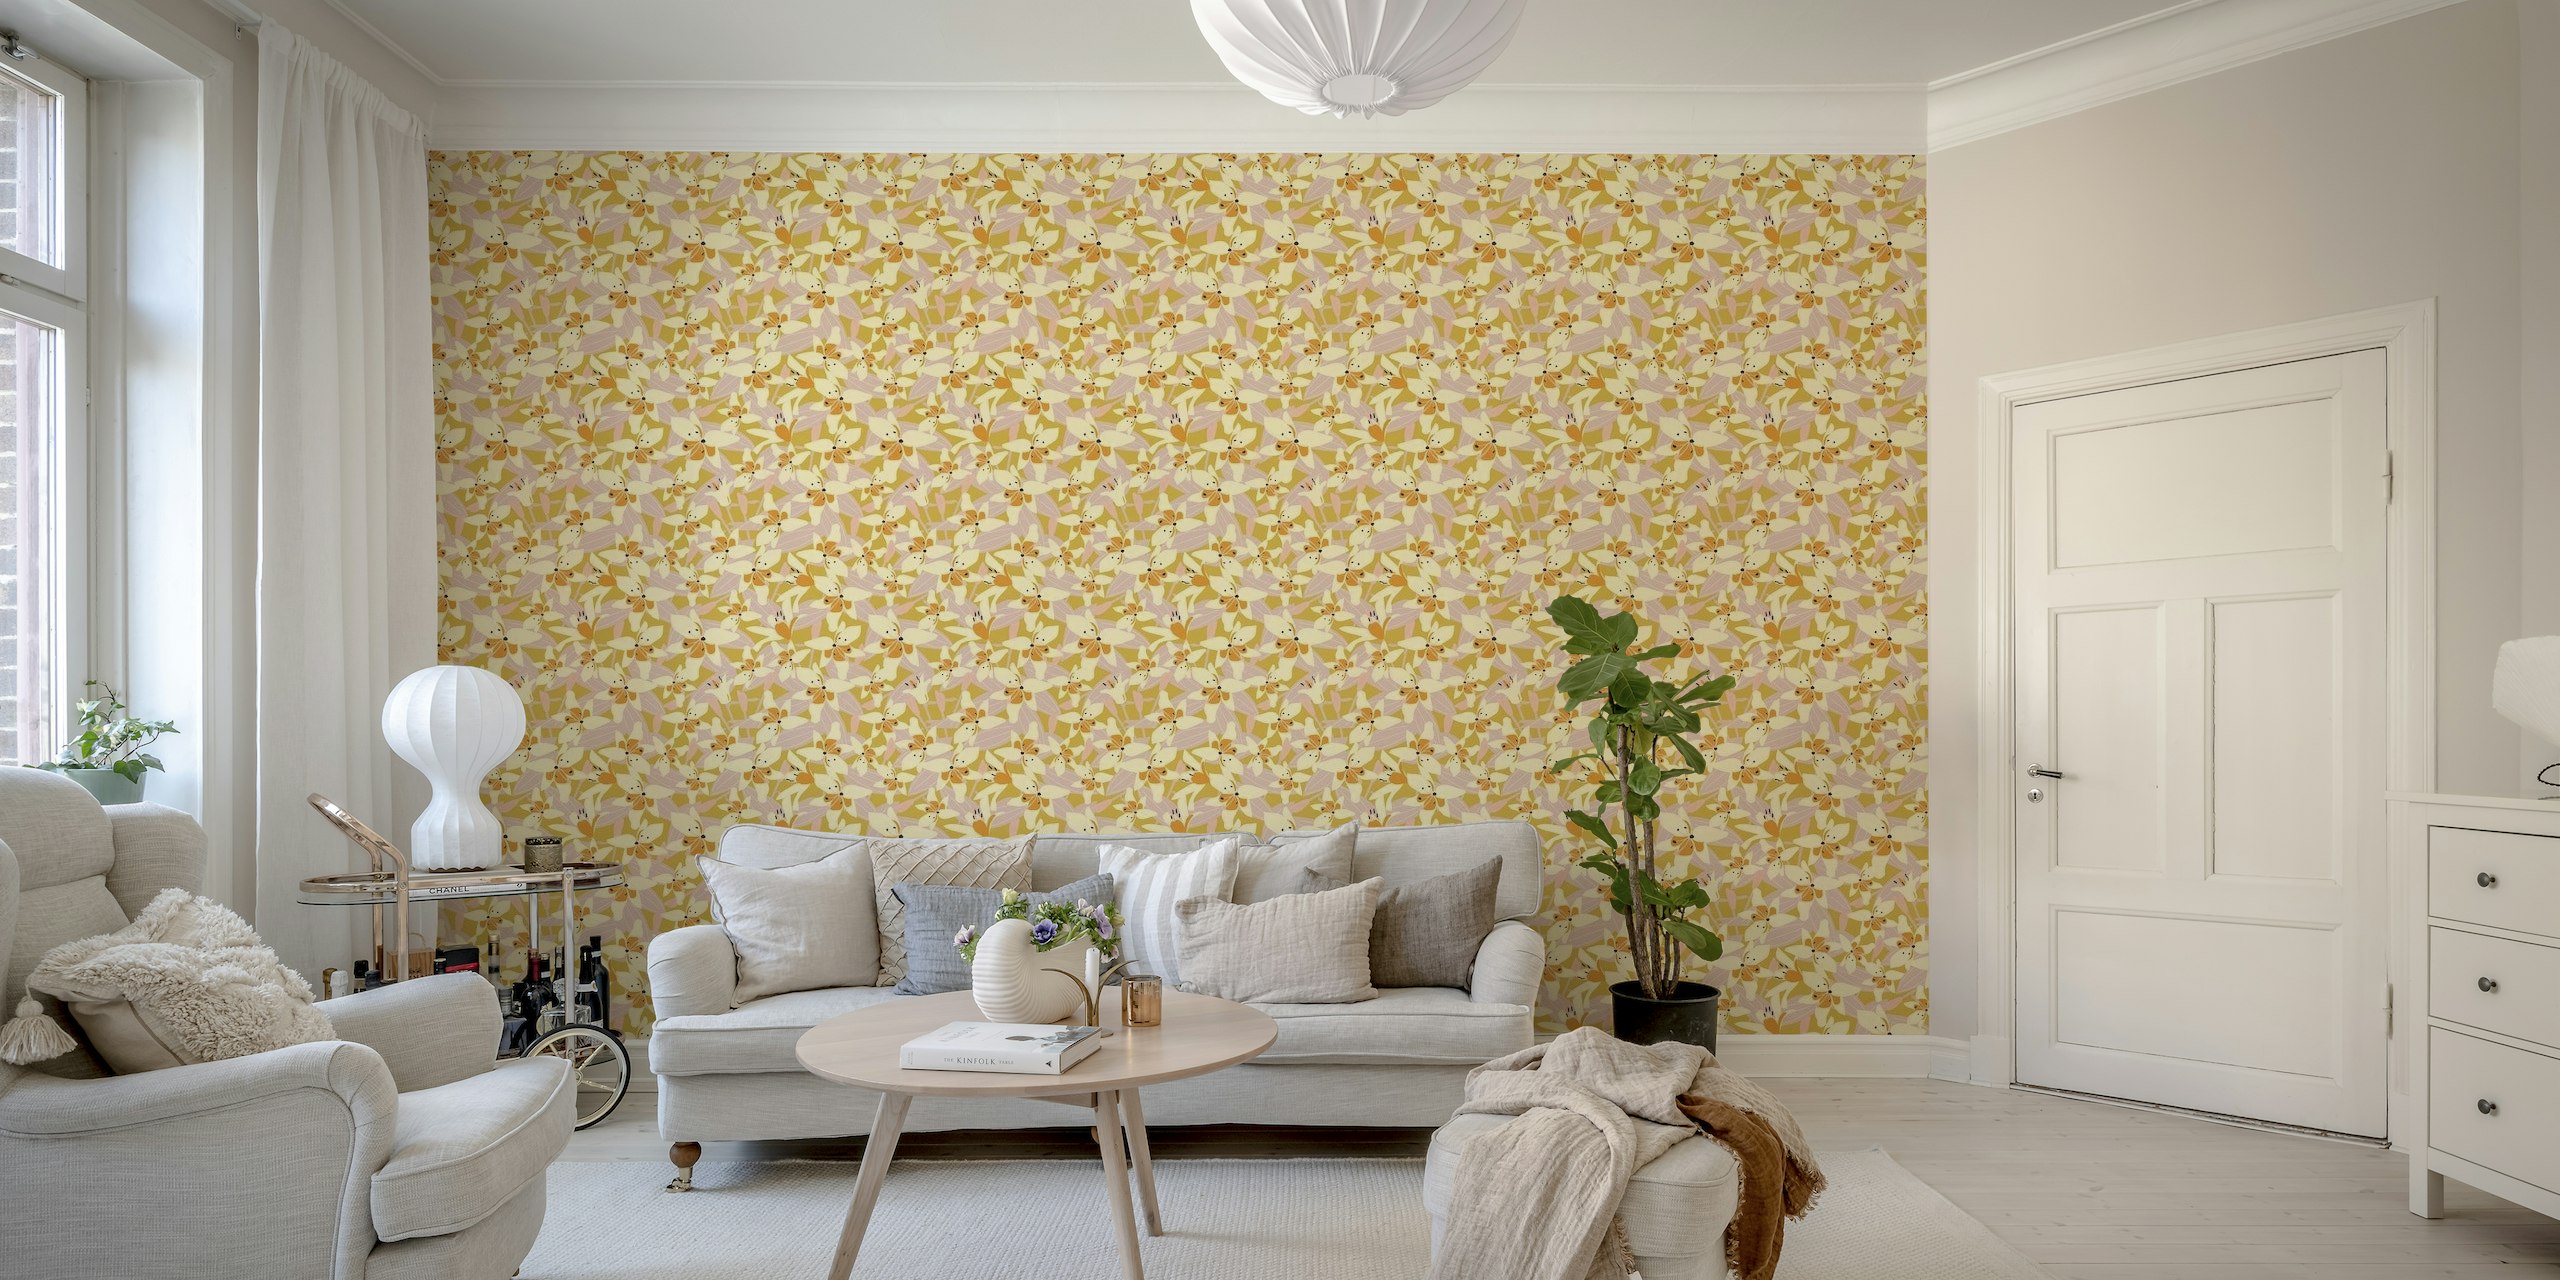 Refreshing Banana Lily wallpaper